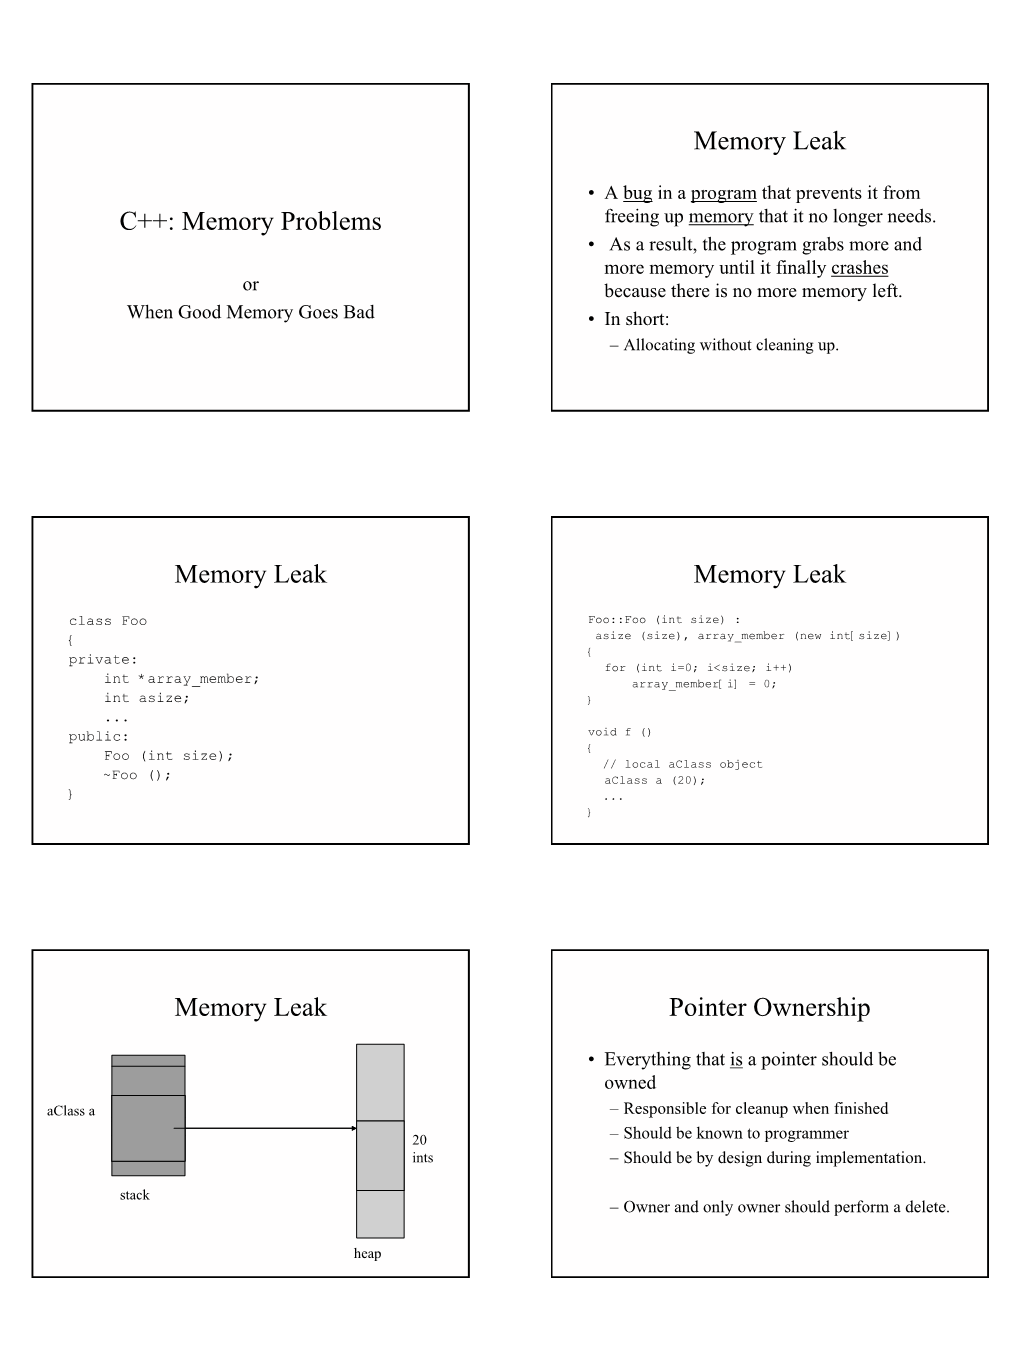 C++: Memory Problems Memory Leak Memory Leak Memory Leak